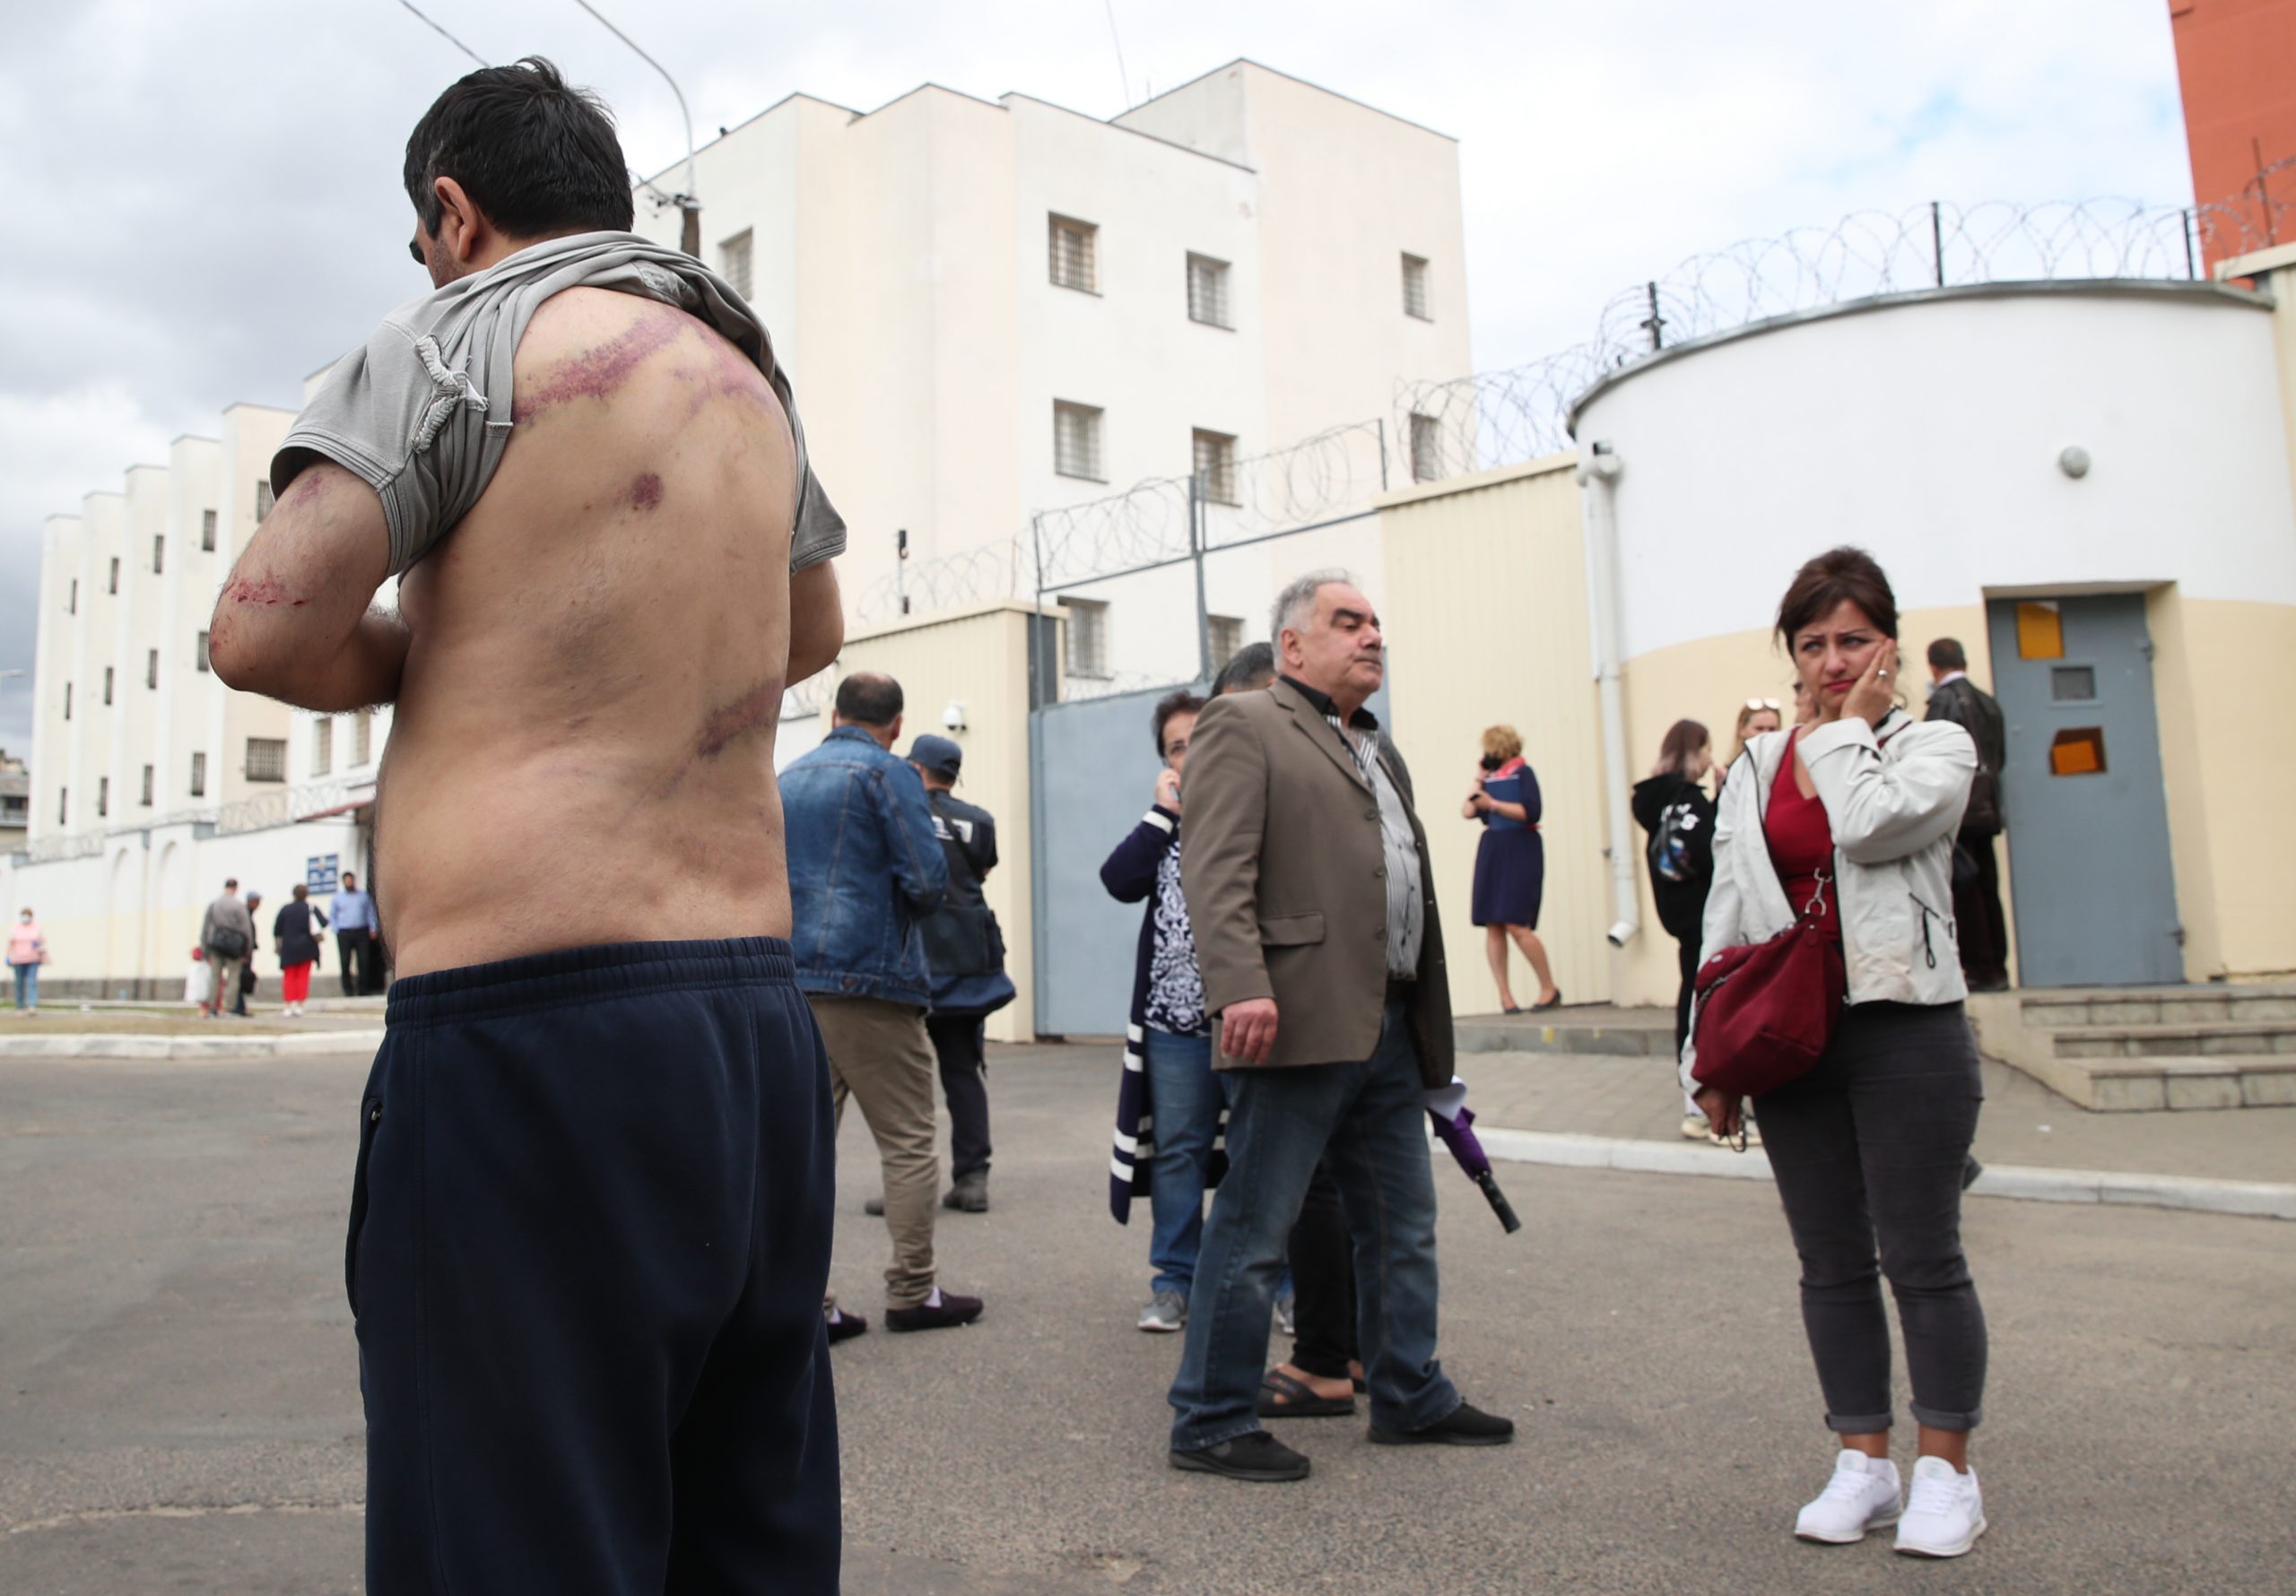 Отпущенный из изолятора мужчина показывает следы побоев. Фото Natalia Fedosenko/TASS/Scanpix/Leta